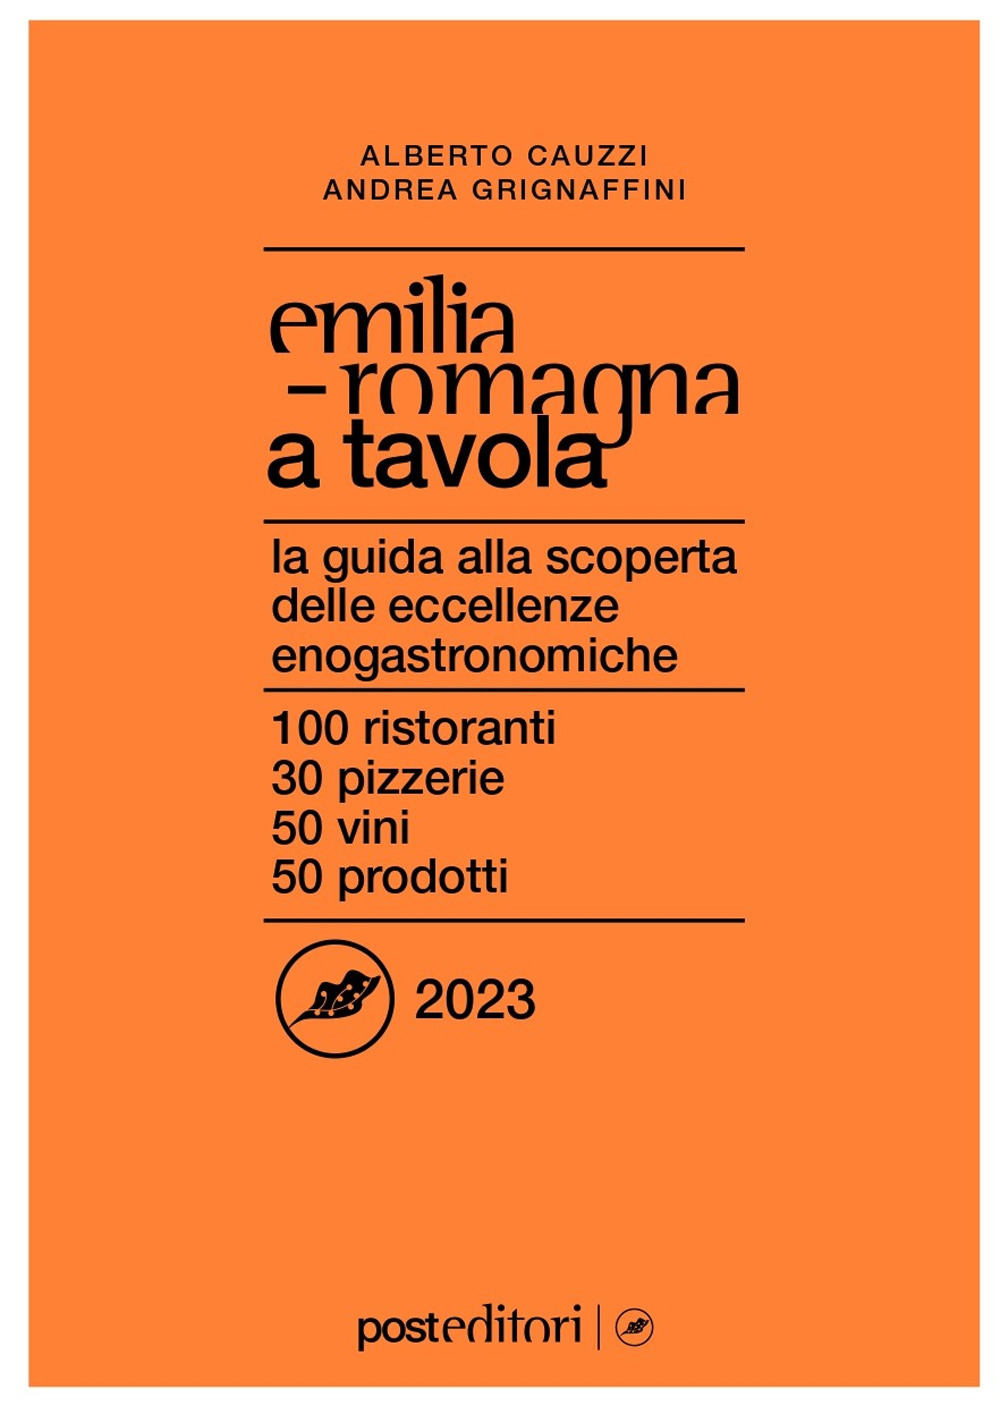 Emilia Romagna a tavola 2023. La guida alla scoperta delle eccellenze enogastronomiche